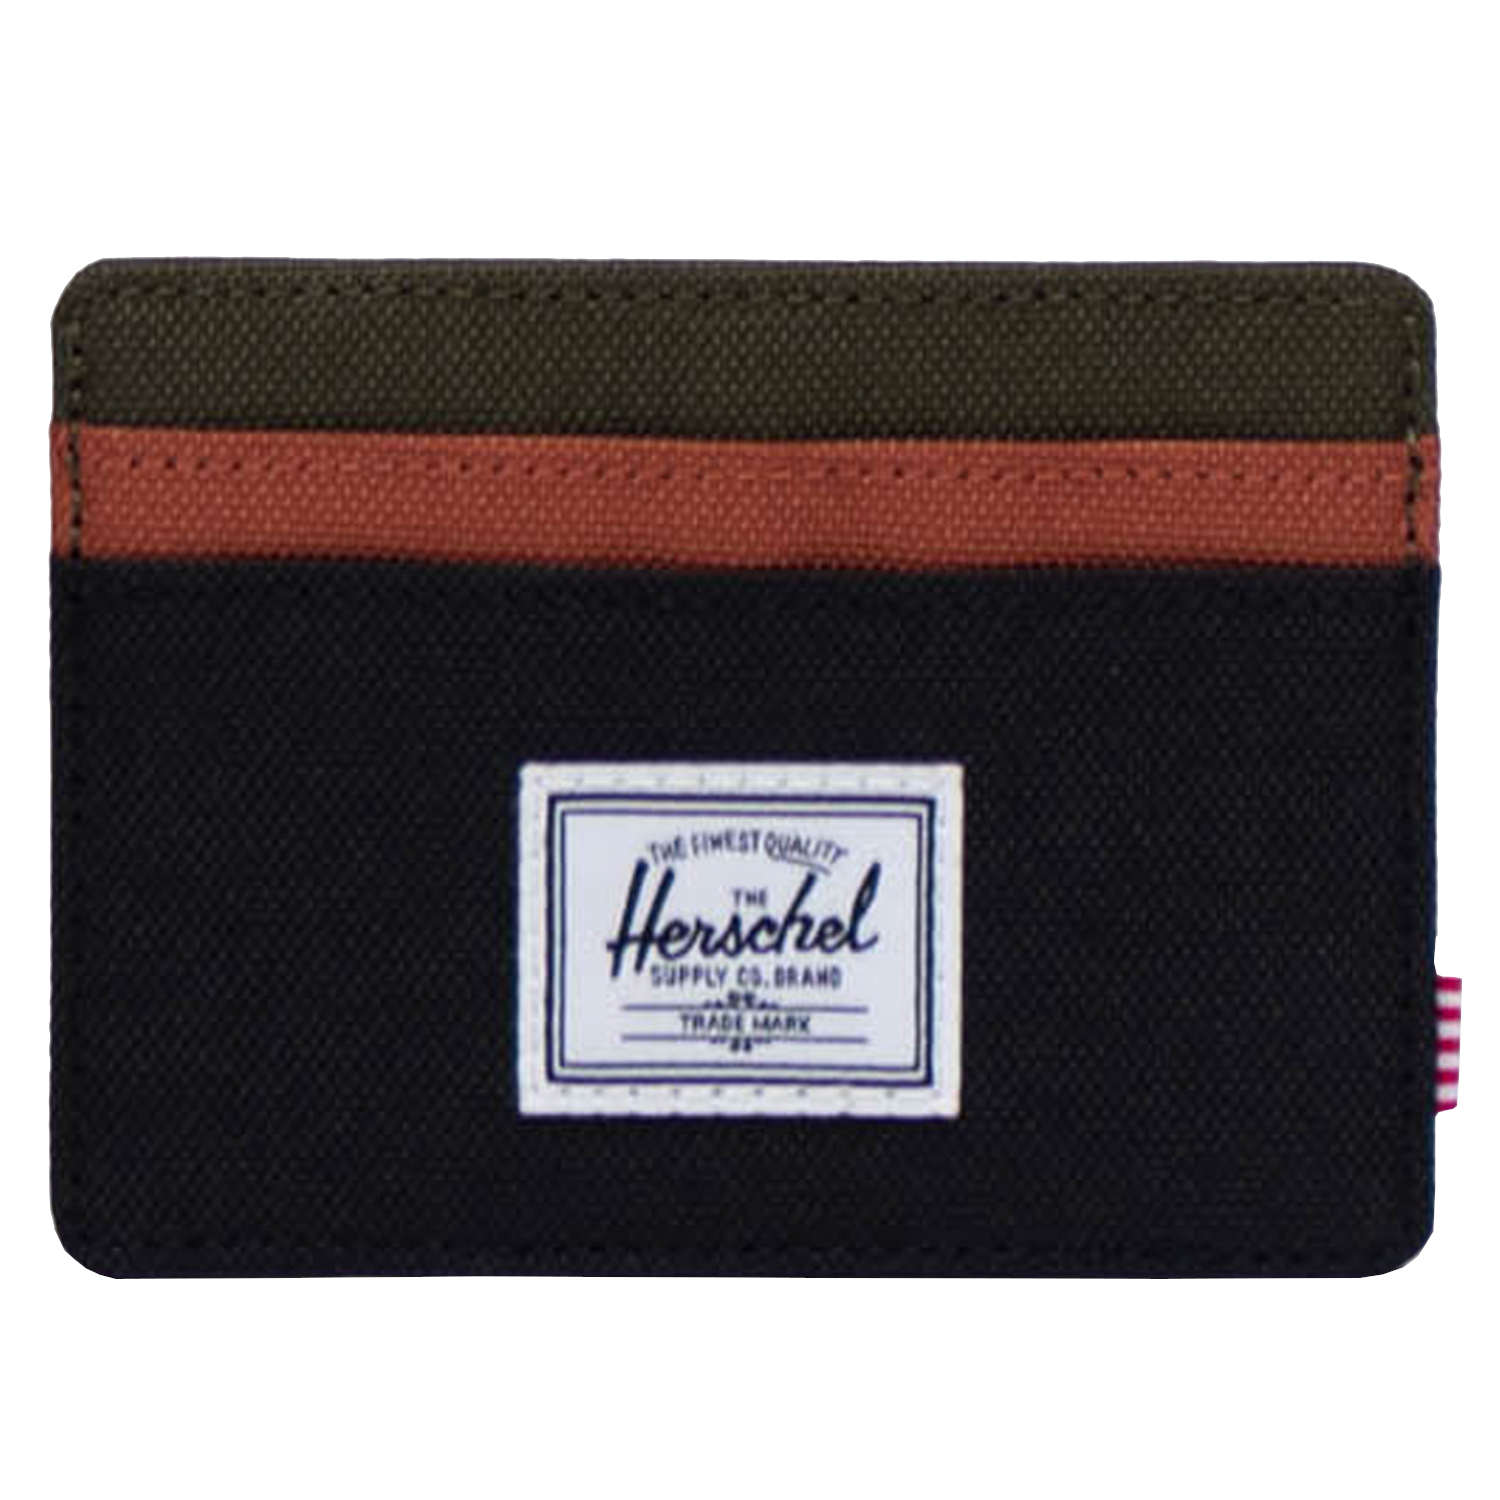 Кошелек Herschel Herschel Cardholder Wallet, черный кошелек herschel herschel oscar wallet черный